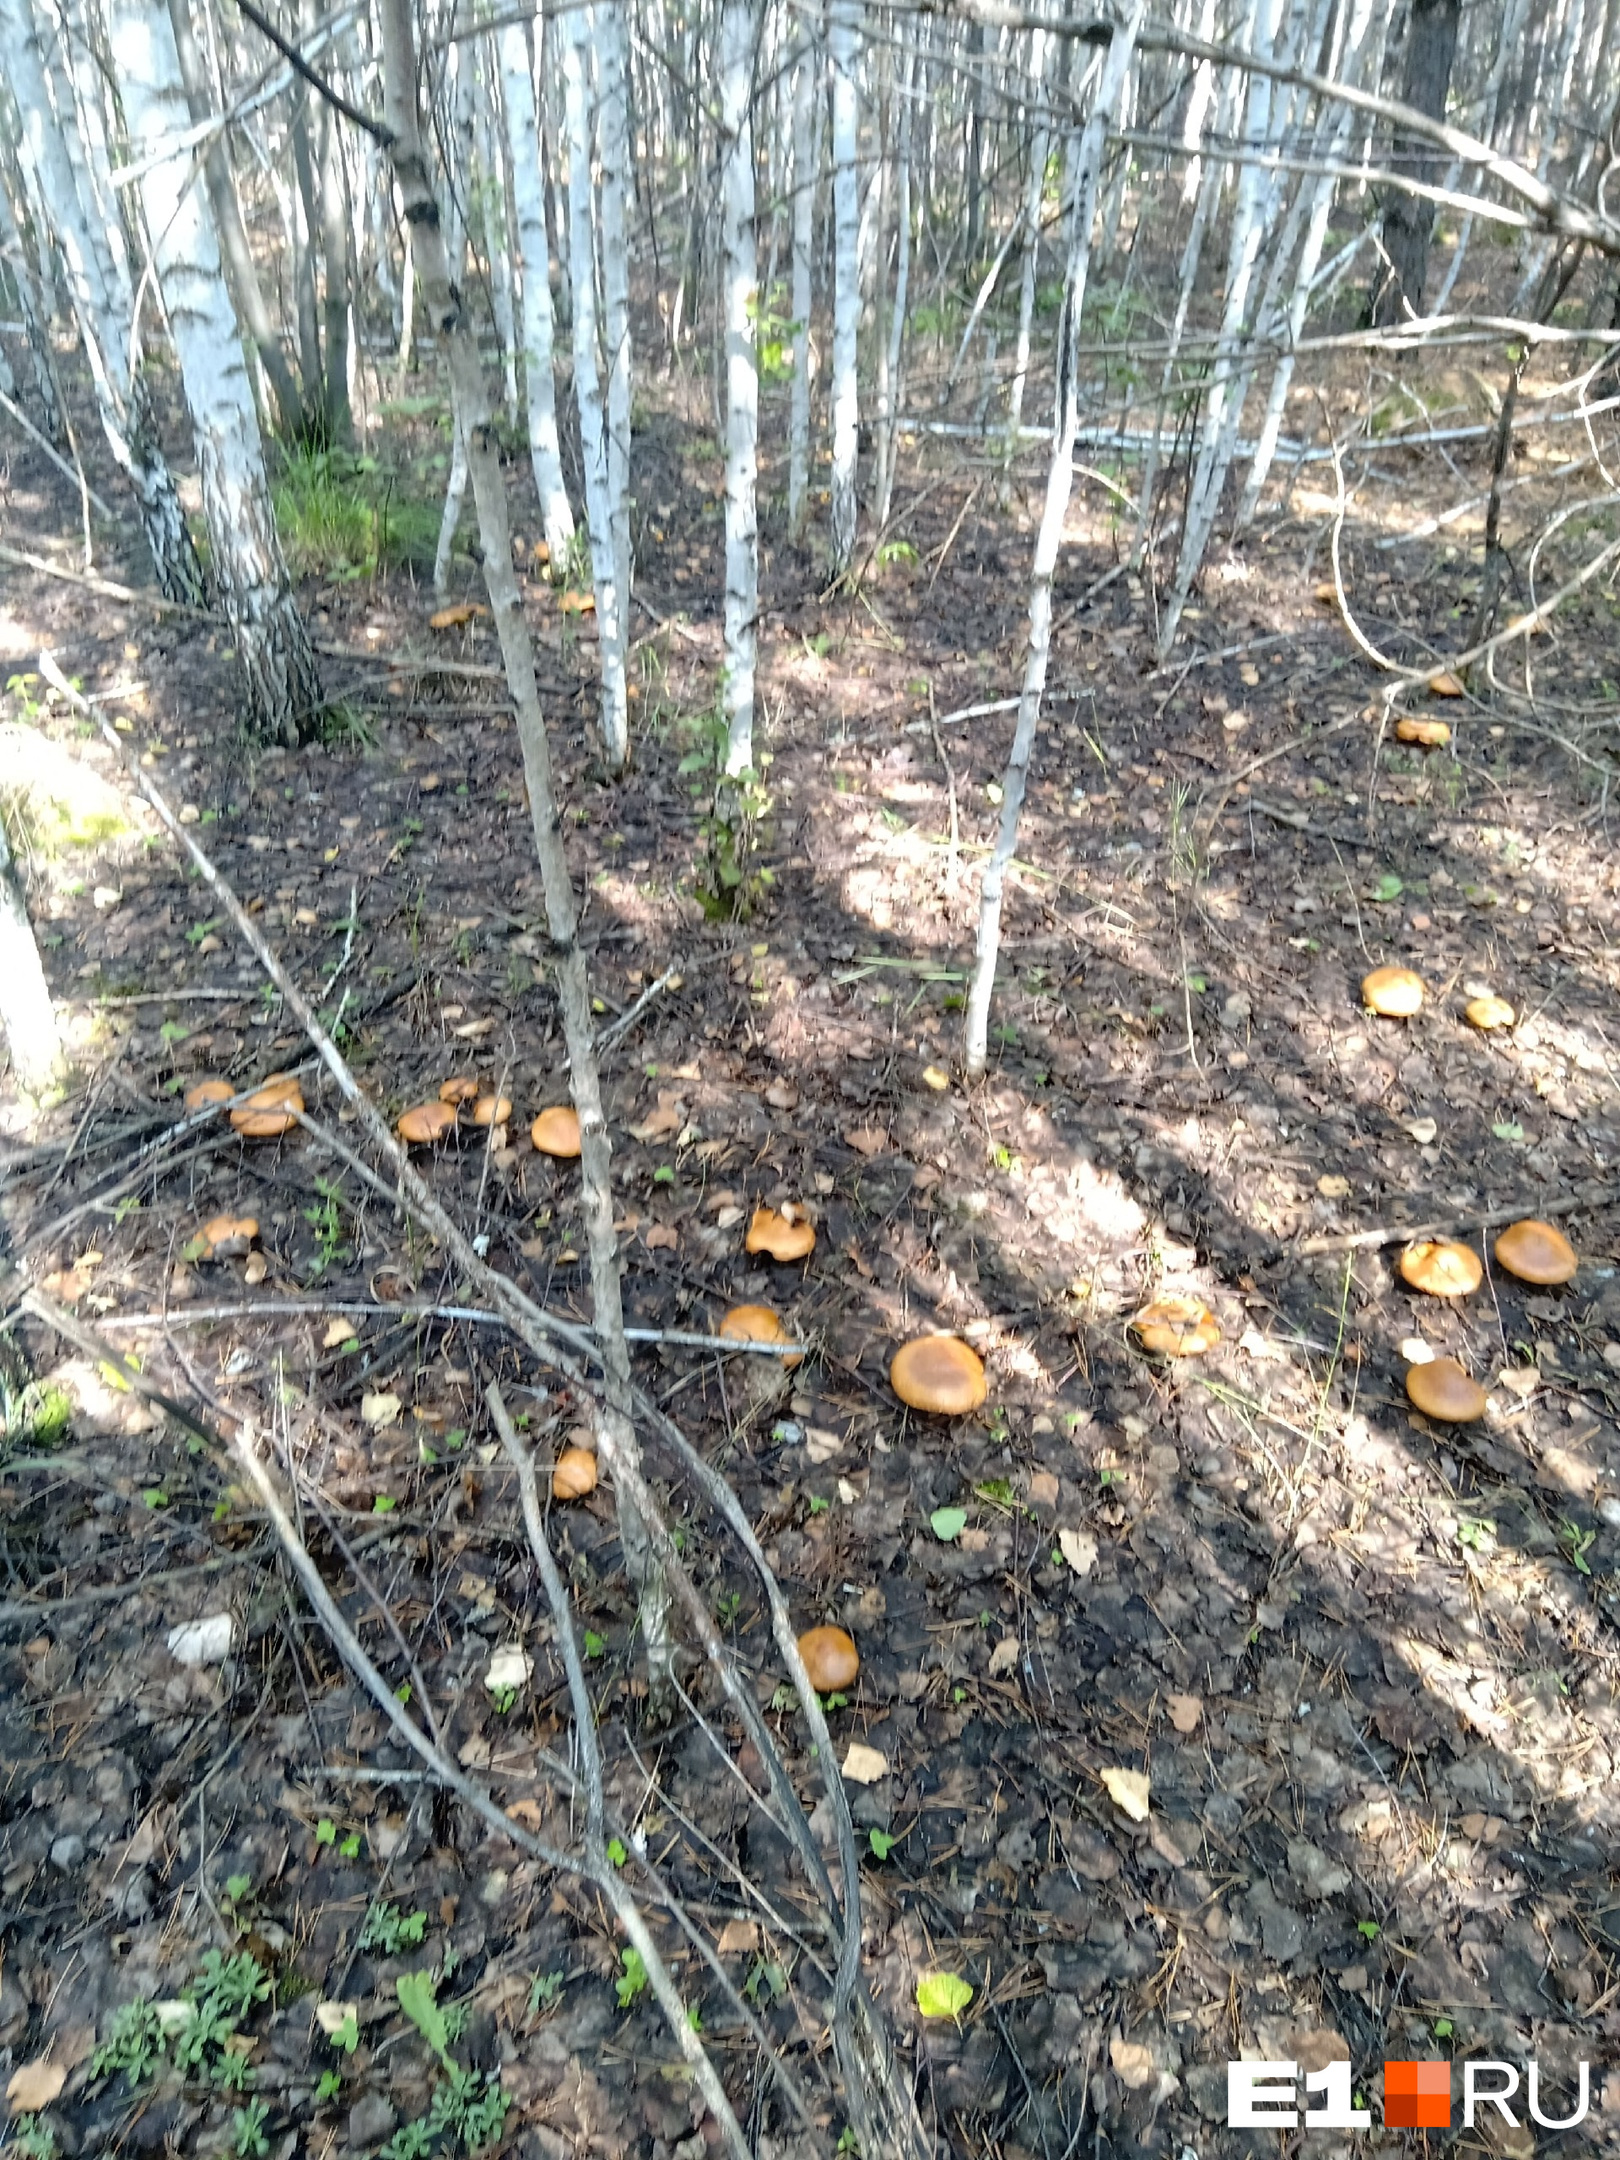 Евгения обнаружила в лесу целое грибное поле!